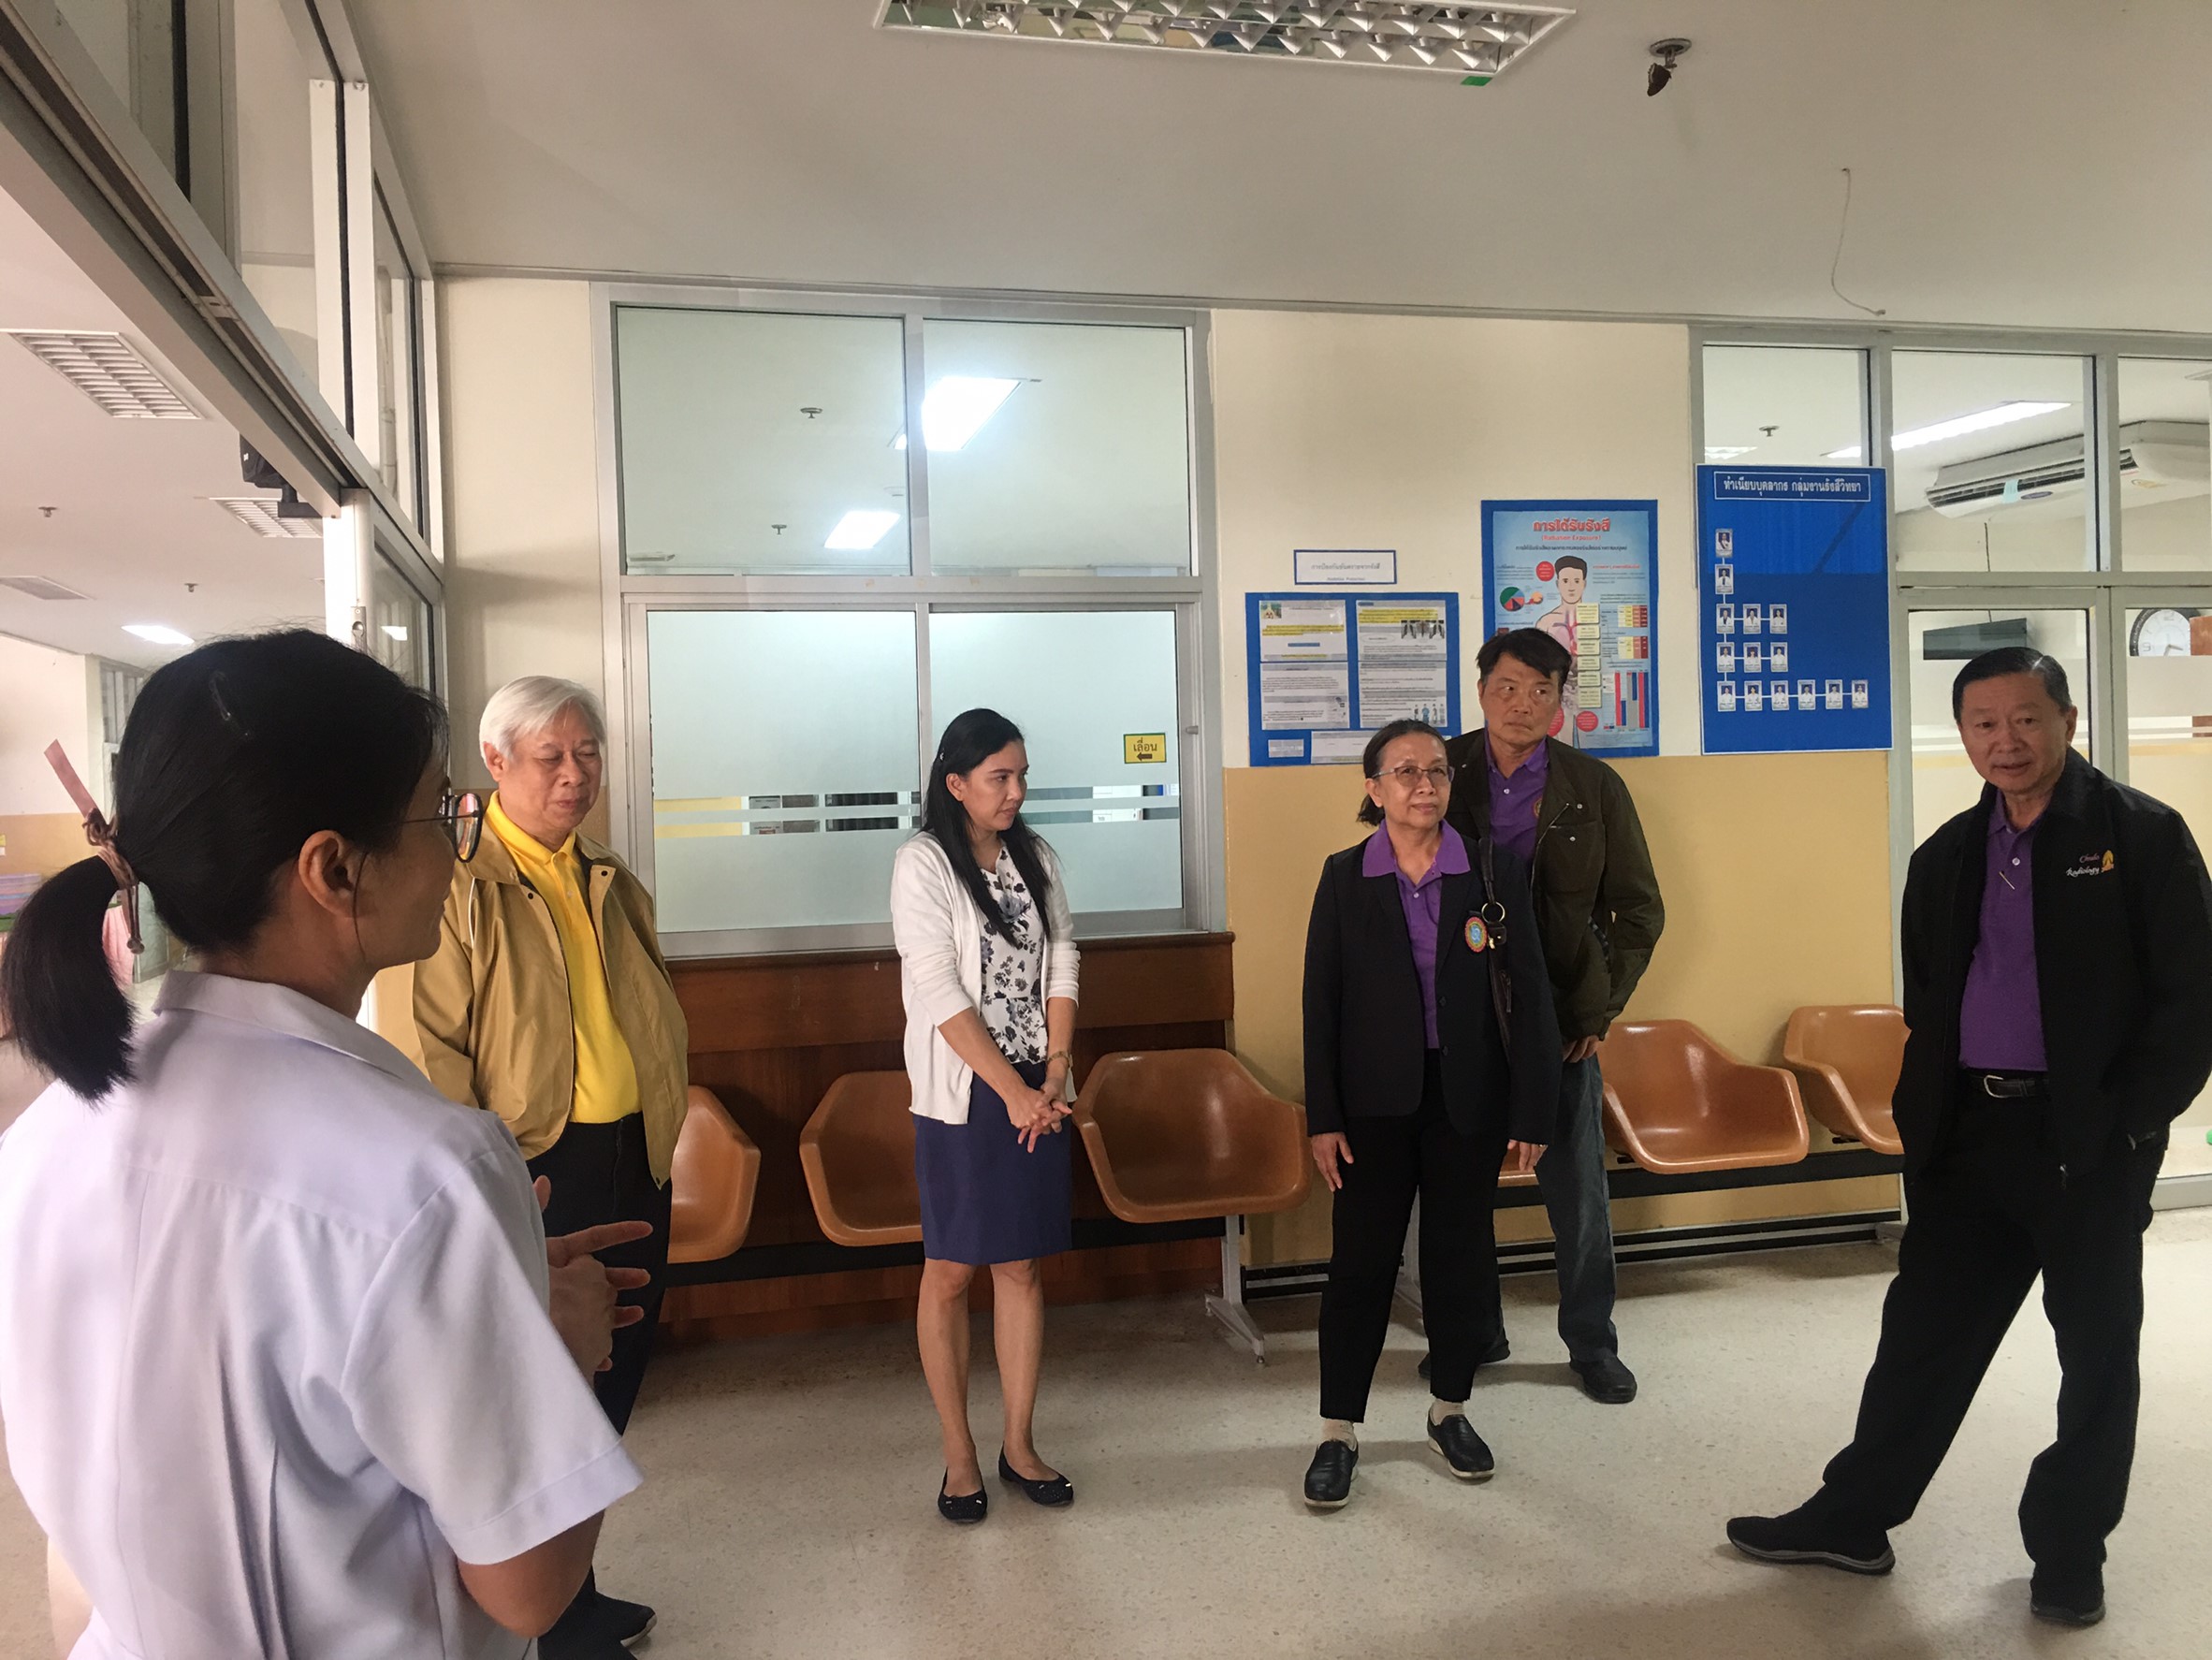 ประชุมวิชาการร่วมกับรังสีการแพทย์แห่งประเทศไทย ครั้งที่17 27-29 พ.ย. - พร้อมเข้าเยี่ยมและให้กำลังใจหน่วยงานรังสีวิทยาในพื้นที่จังหวัดอุบลราชธานีระหว่างวันที่ 25-26 พฤศจิกายน 2562 66